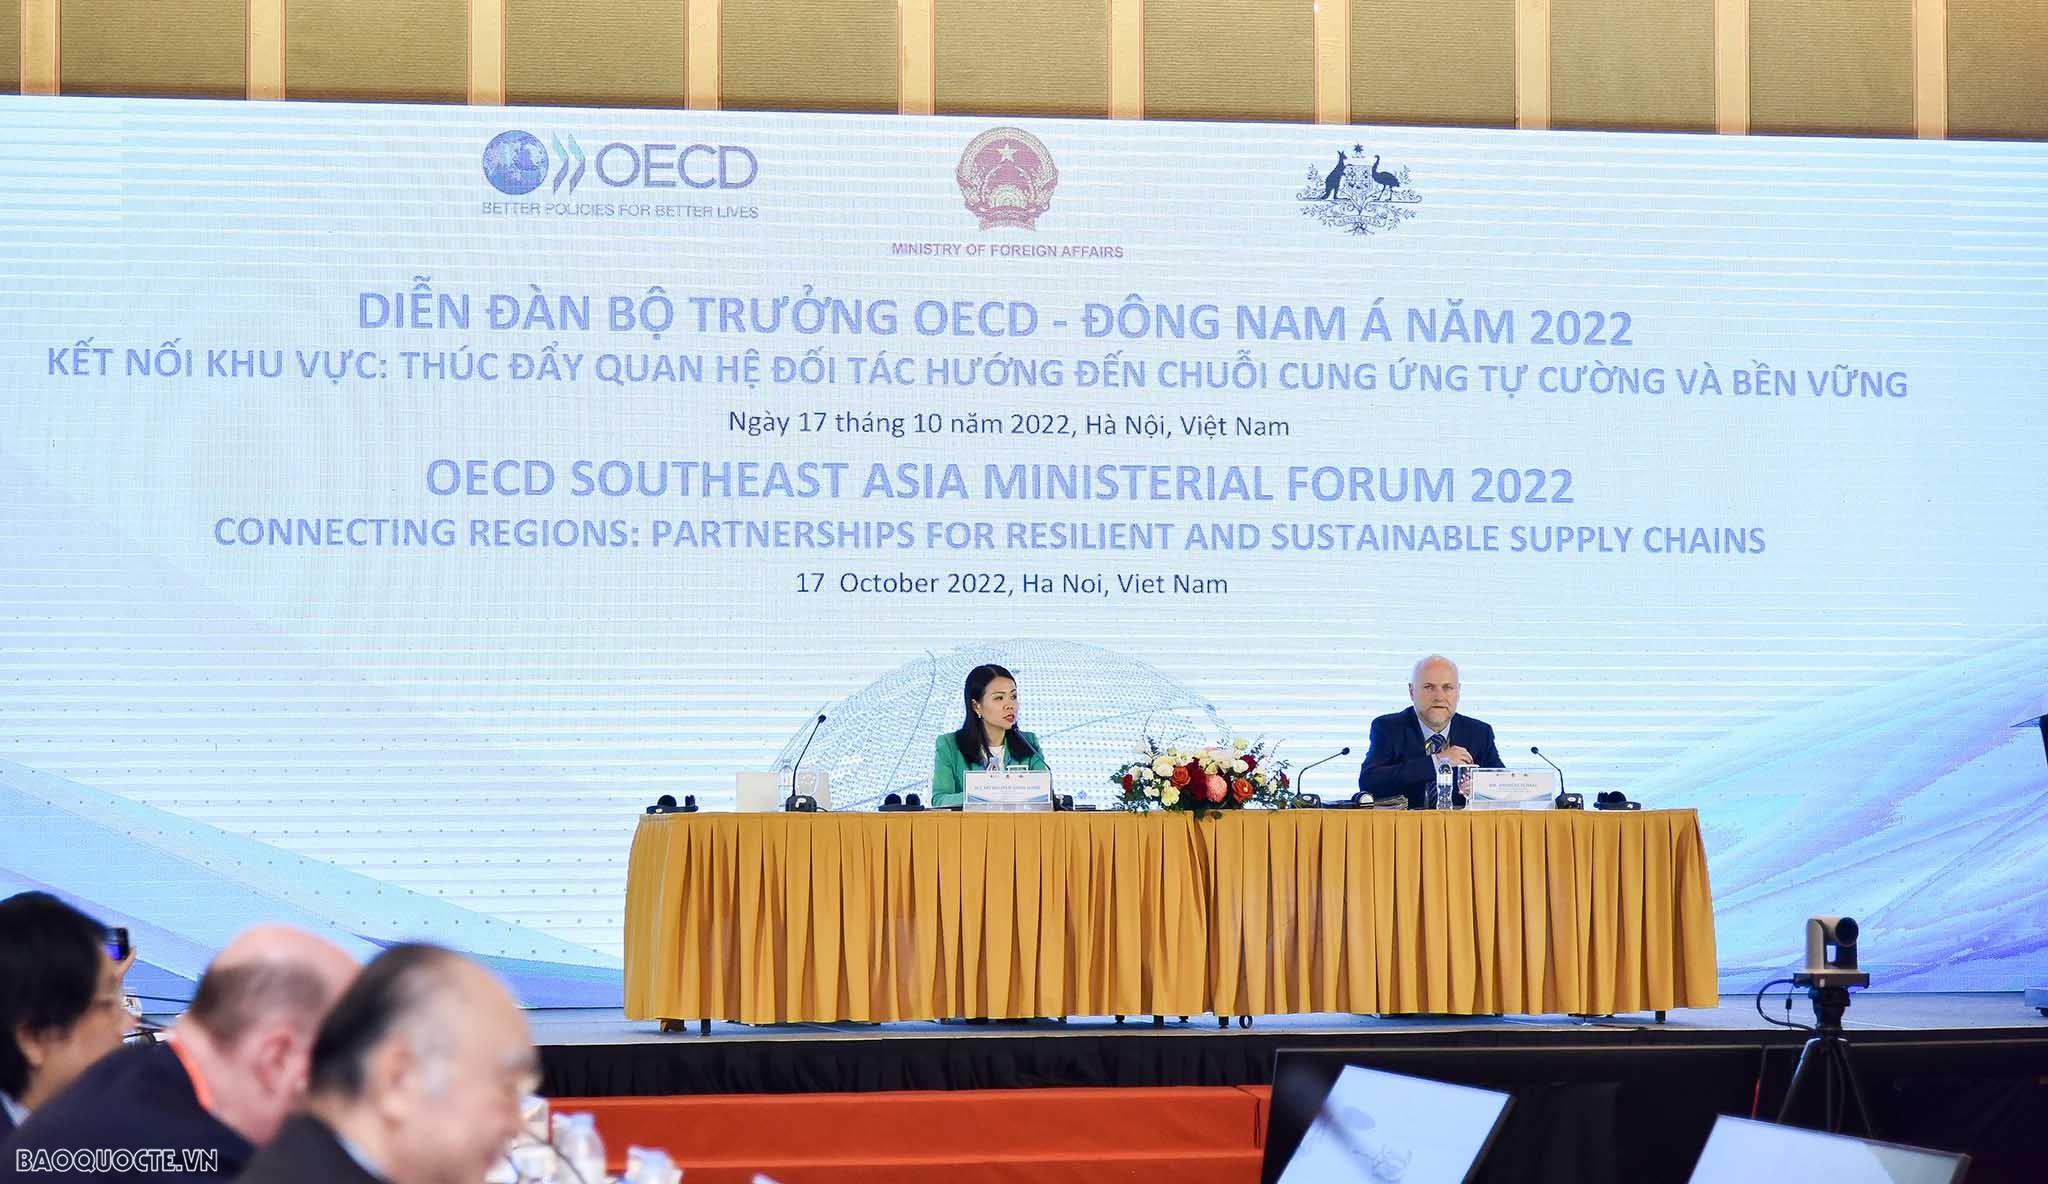 Thúc đẩy quan hệ đối tác OECD và Đông Nam Á  vì chuỗi cung ứng tự cường và bền vững